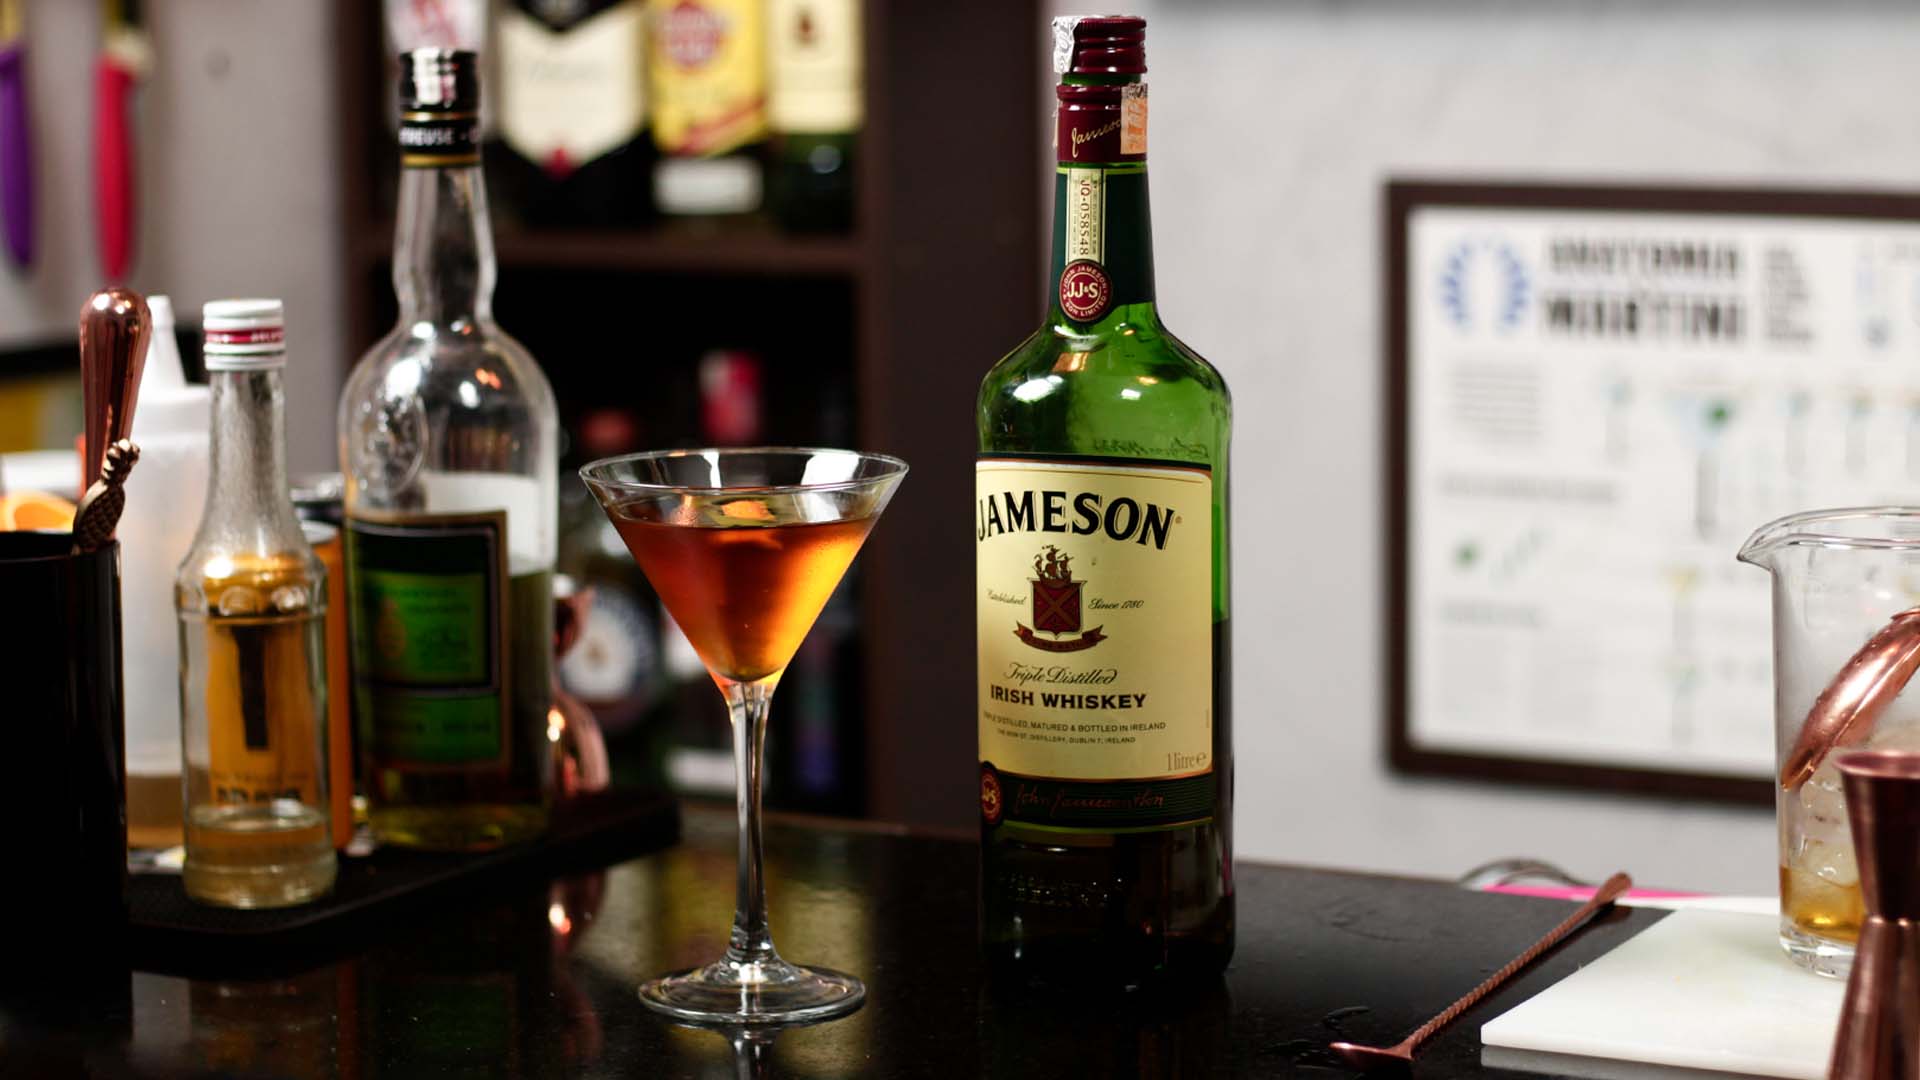 irish whiskey jameson